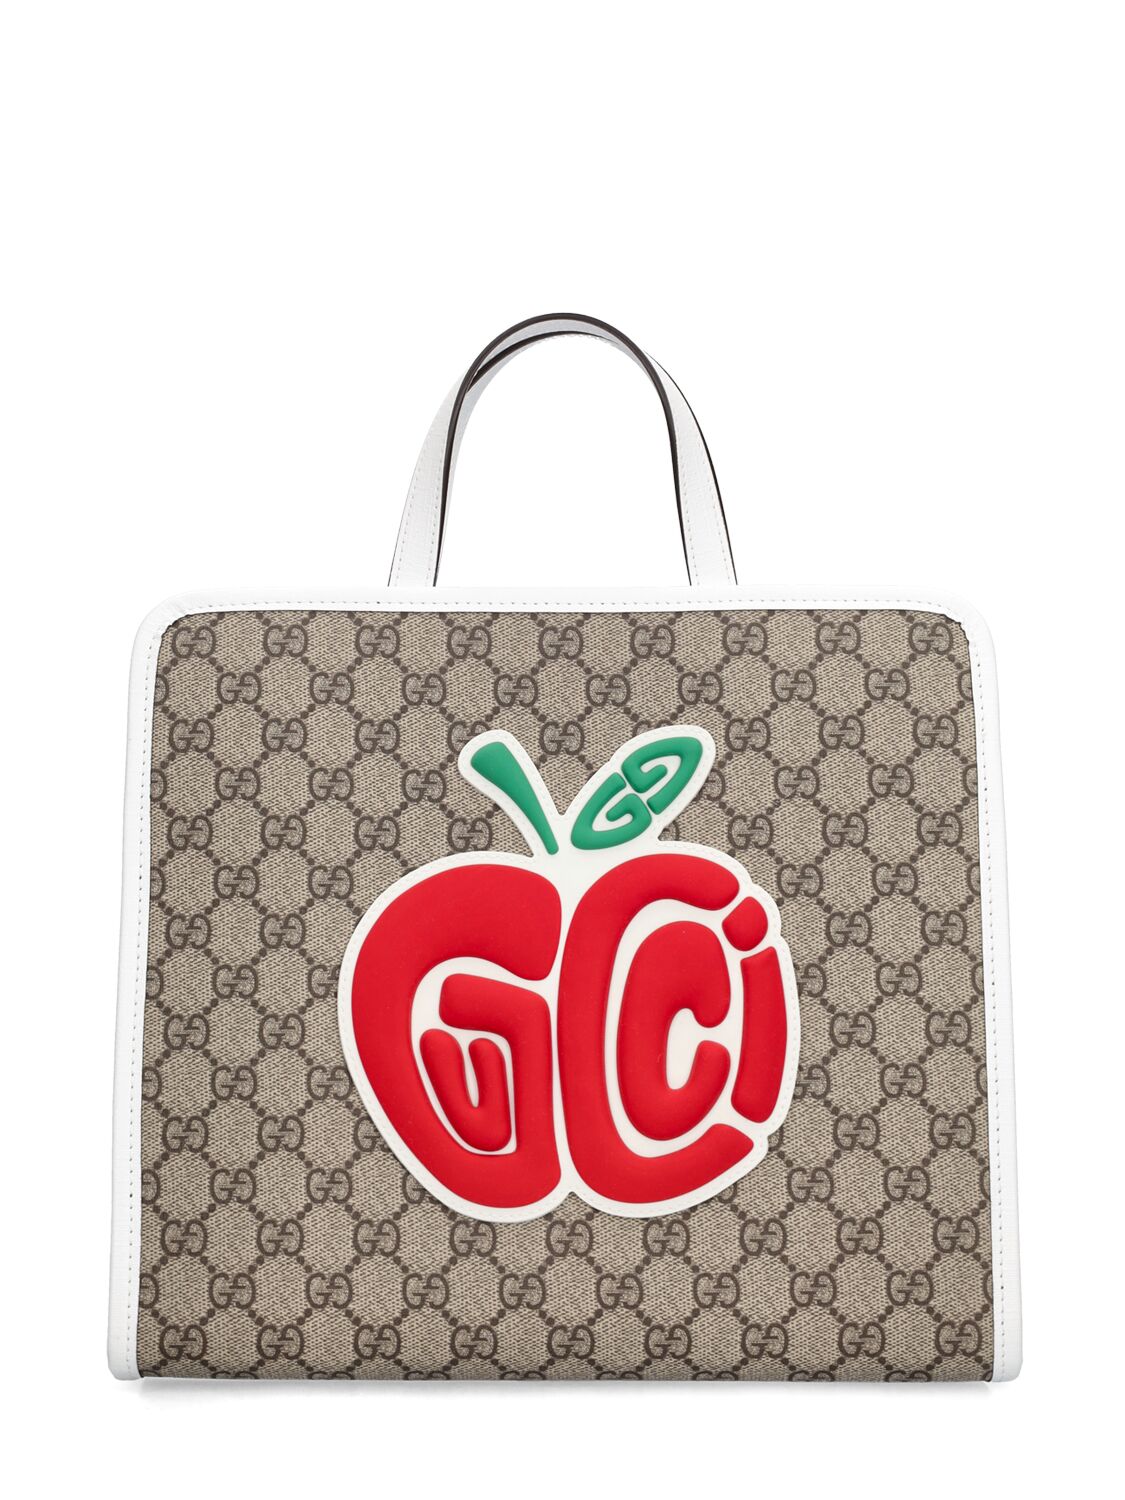 Image of Gg Supreme Tote Bag